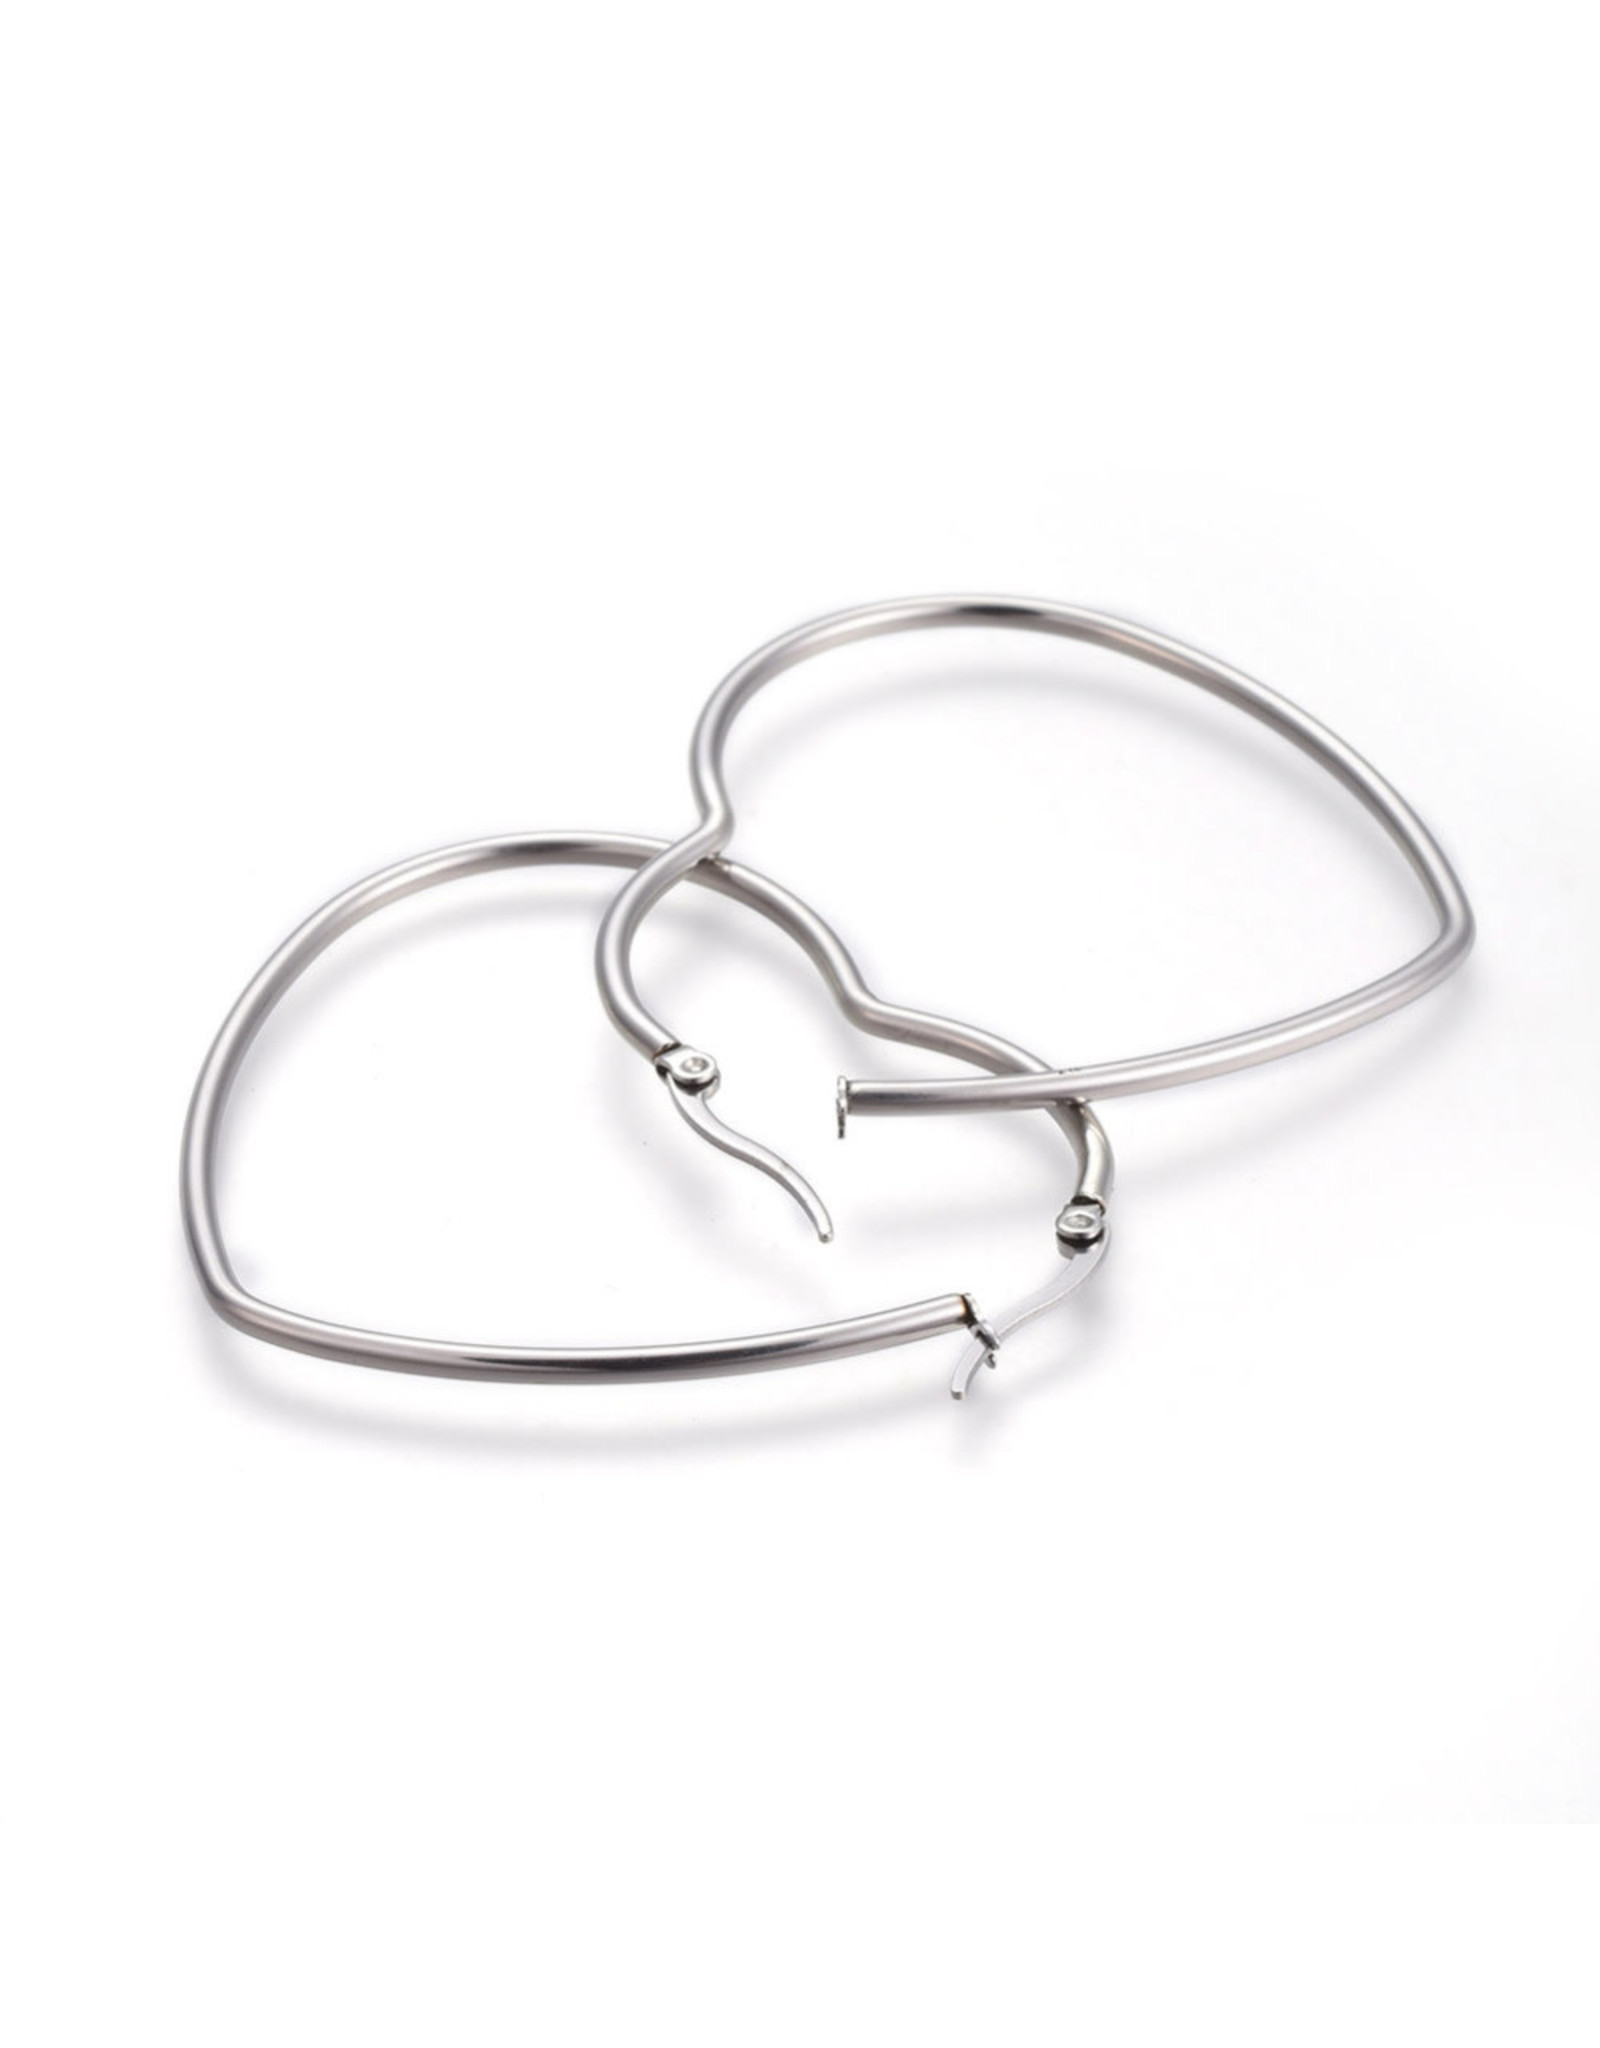 Hoop Earring Heart 66x57mm Stainless Steel  x1 Pair